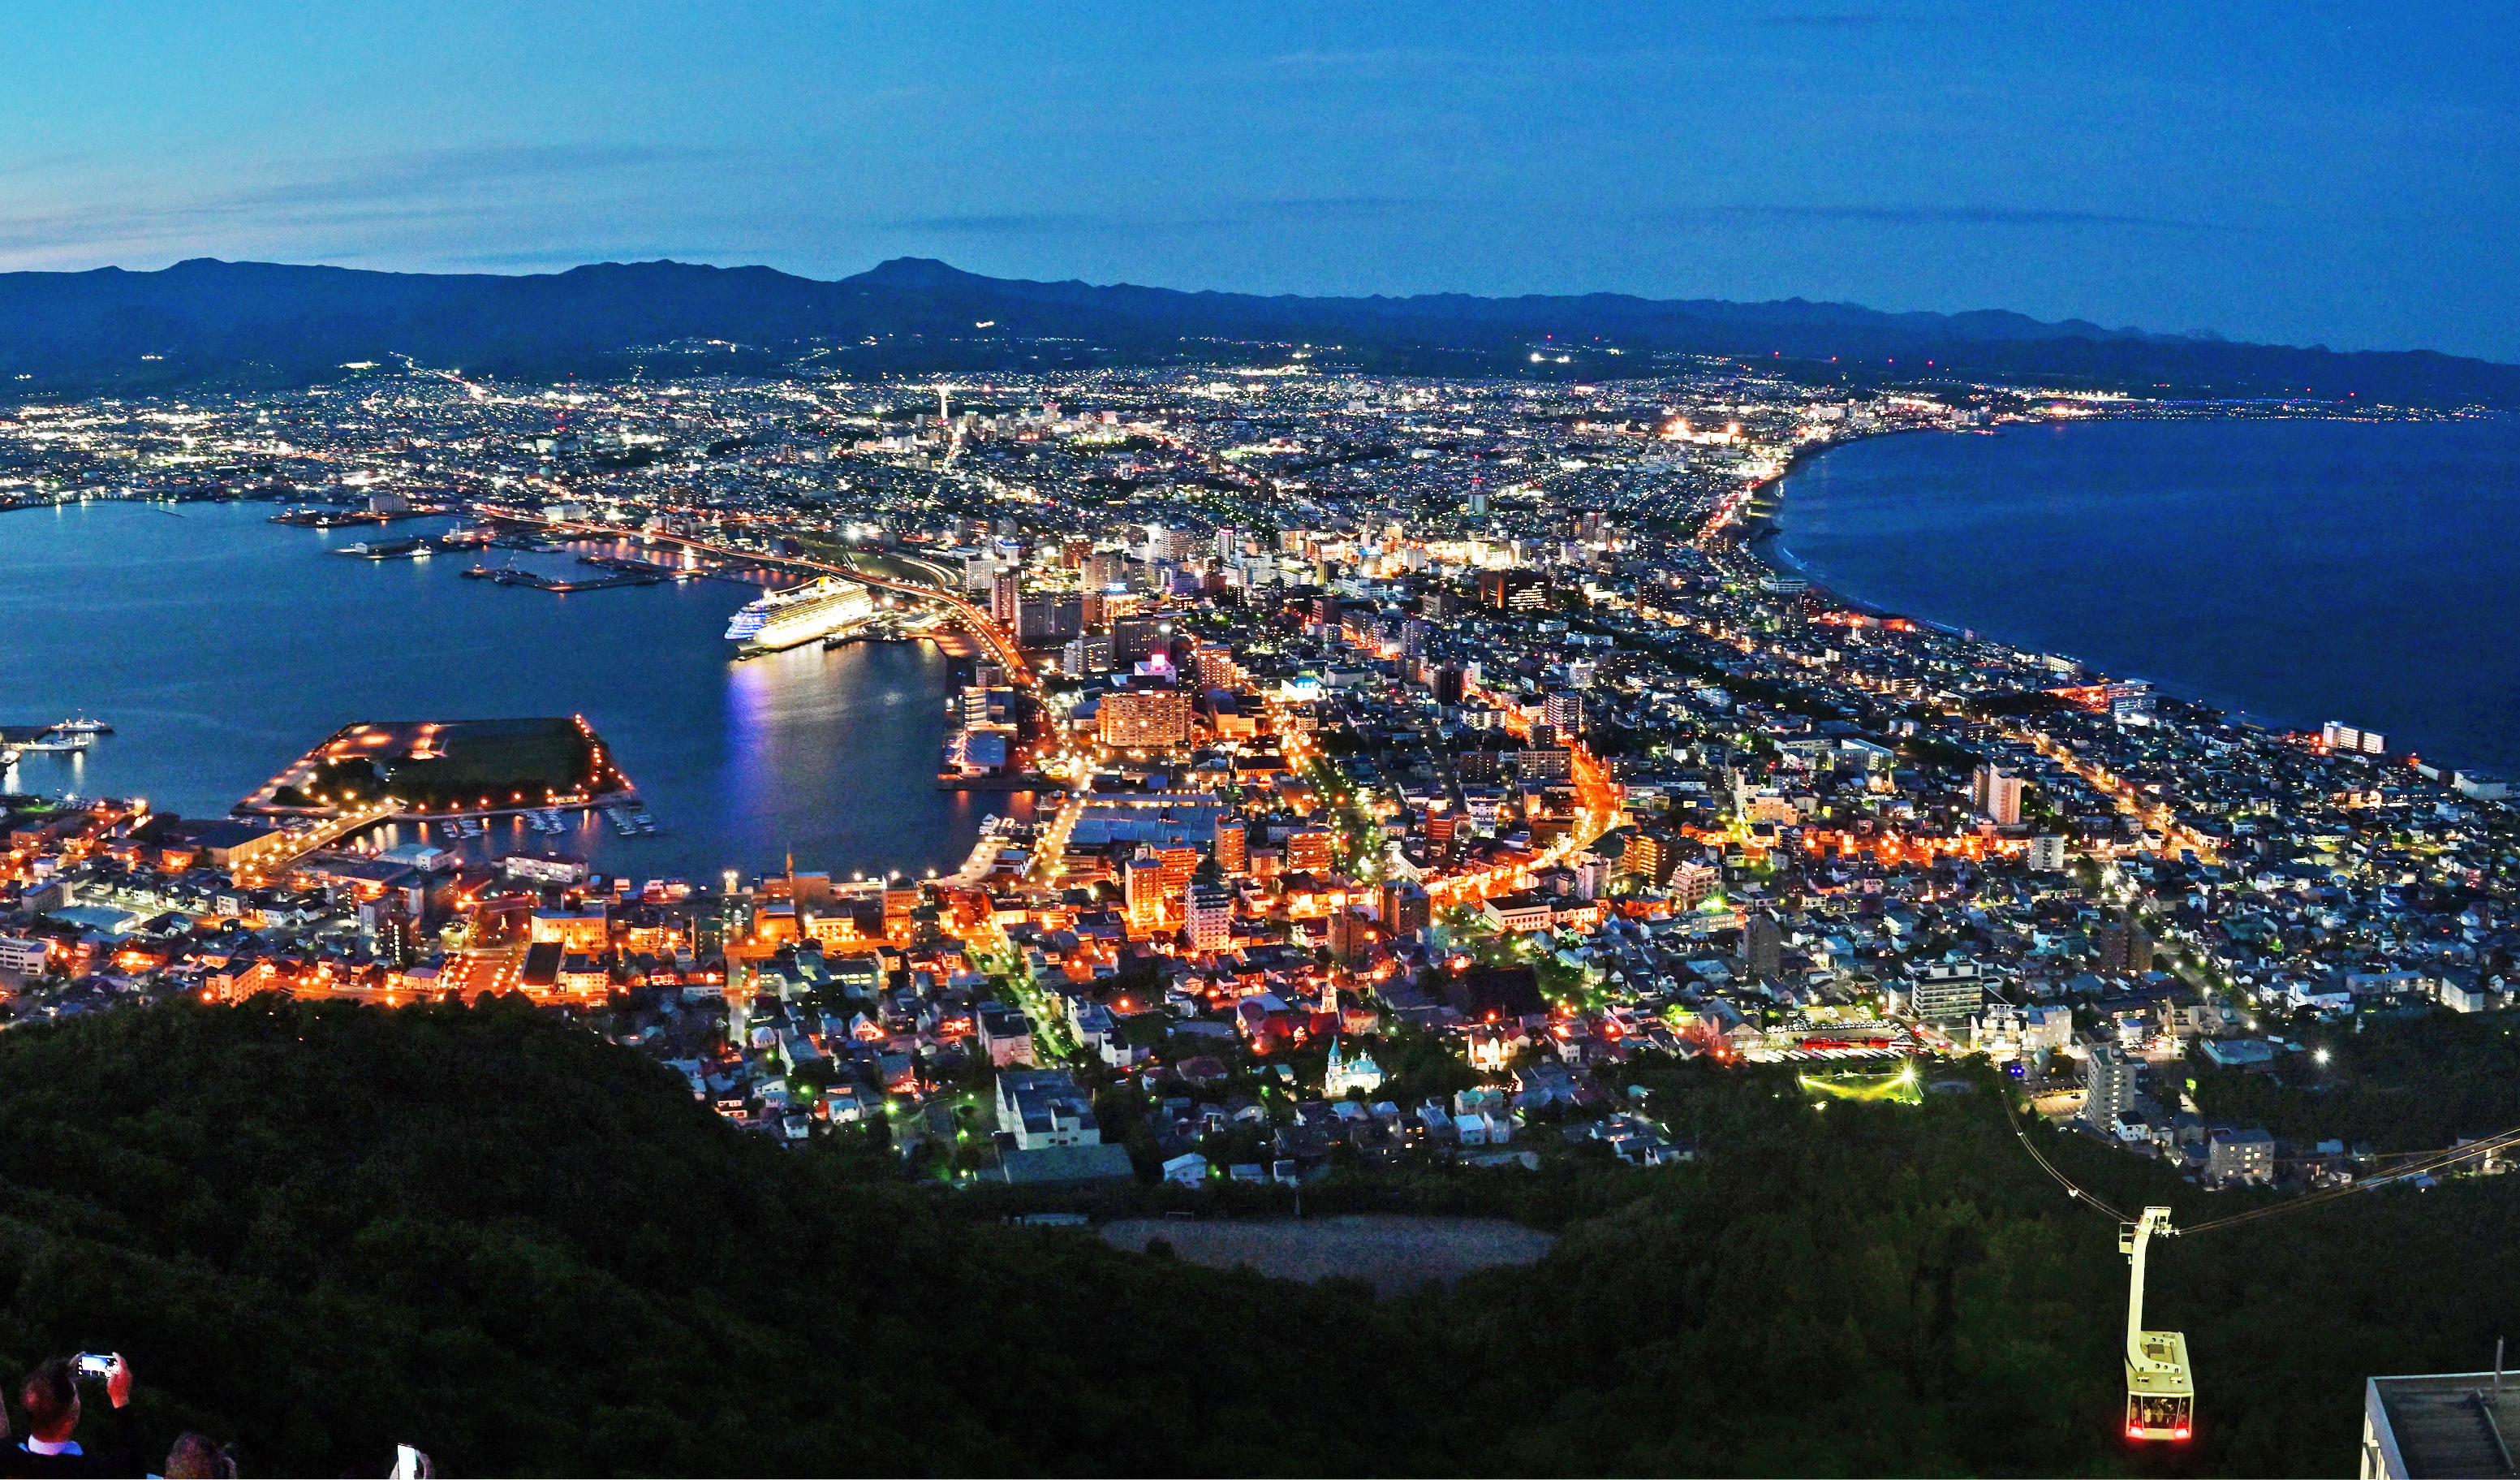 하코다테산 전망대에서 본 하코다테 야경. 밤 풍경 가운데 일본 내 최고 절경으로 꼽힌다.